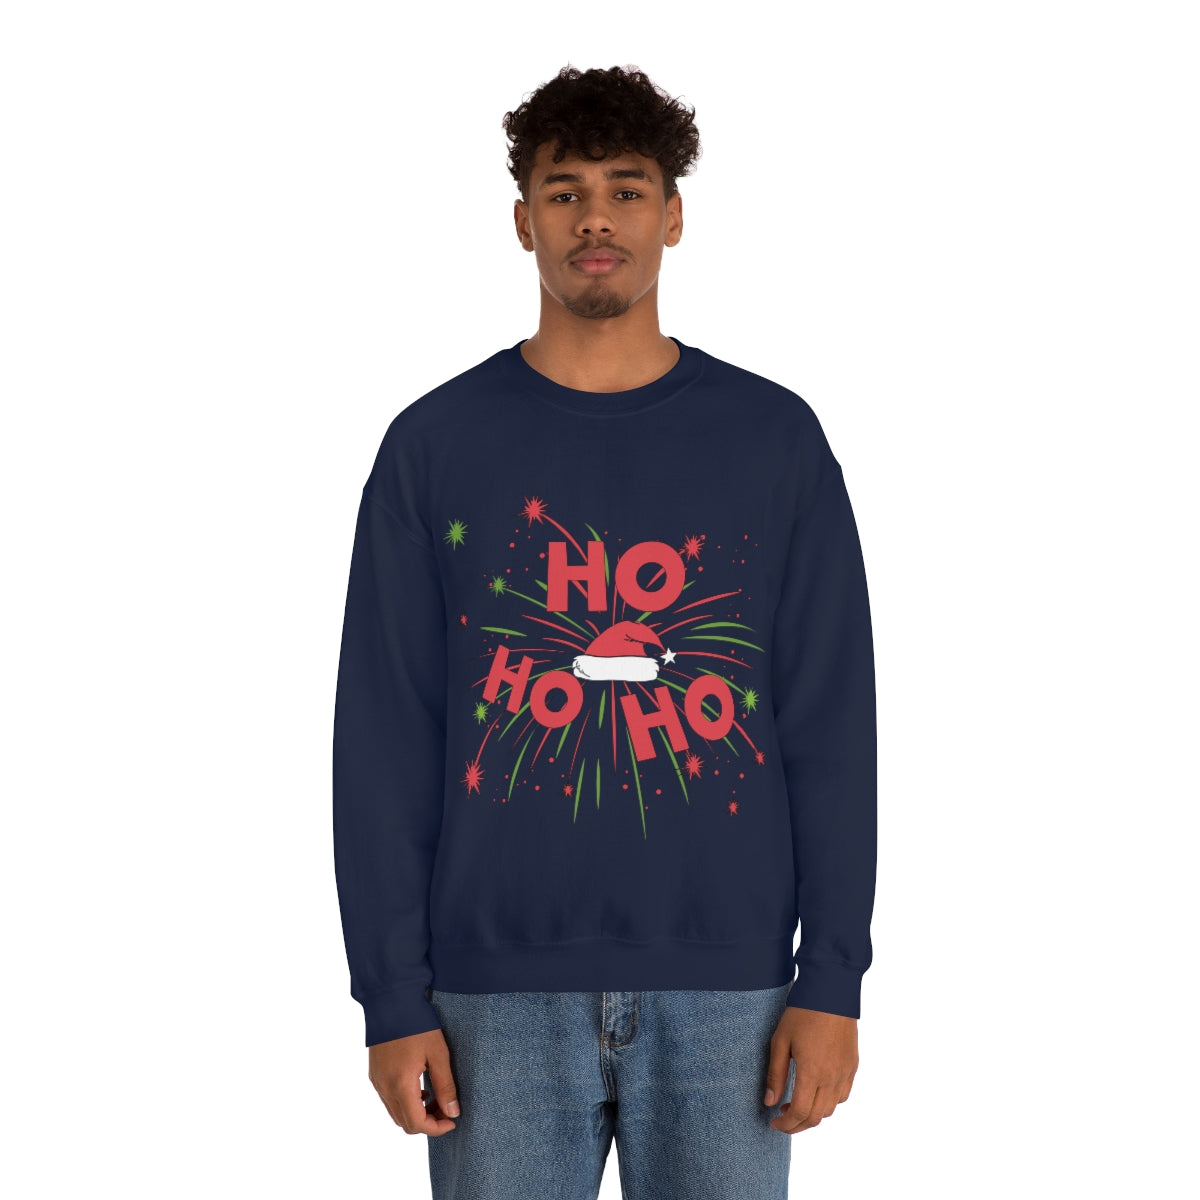 Merry Christmas Unisex Sweatshirts , Sweatshirt , Women Sweatshirt , Men Sweatshirt ,Crewneck Sweatshirt, HO HO HO Printify